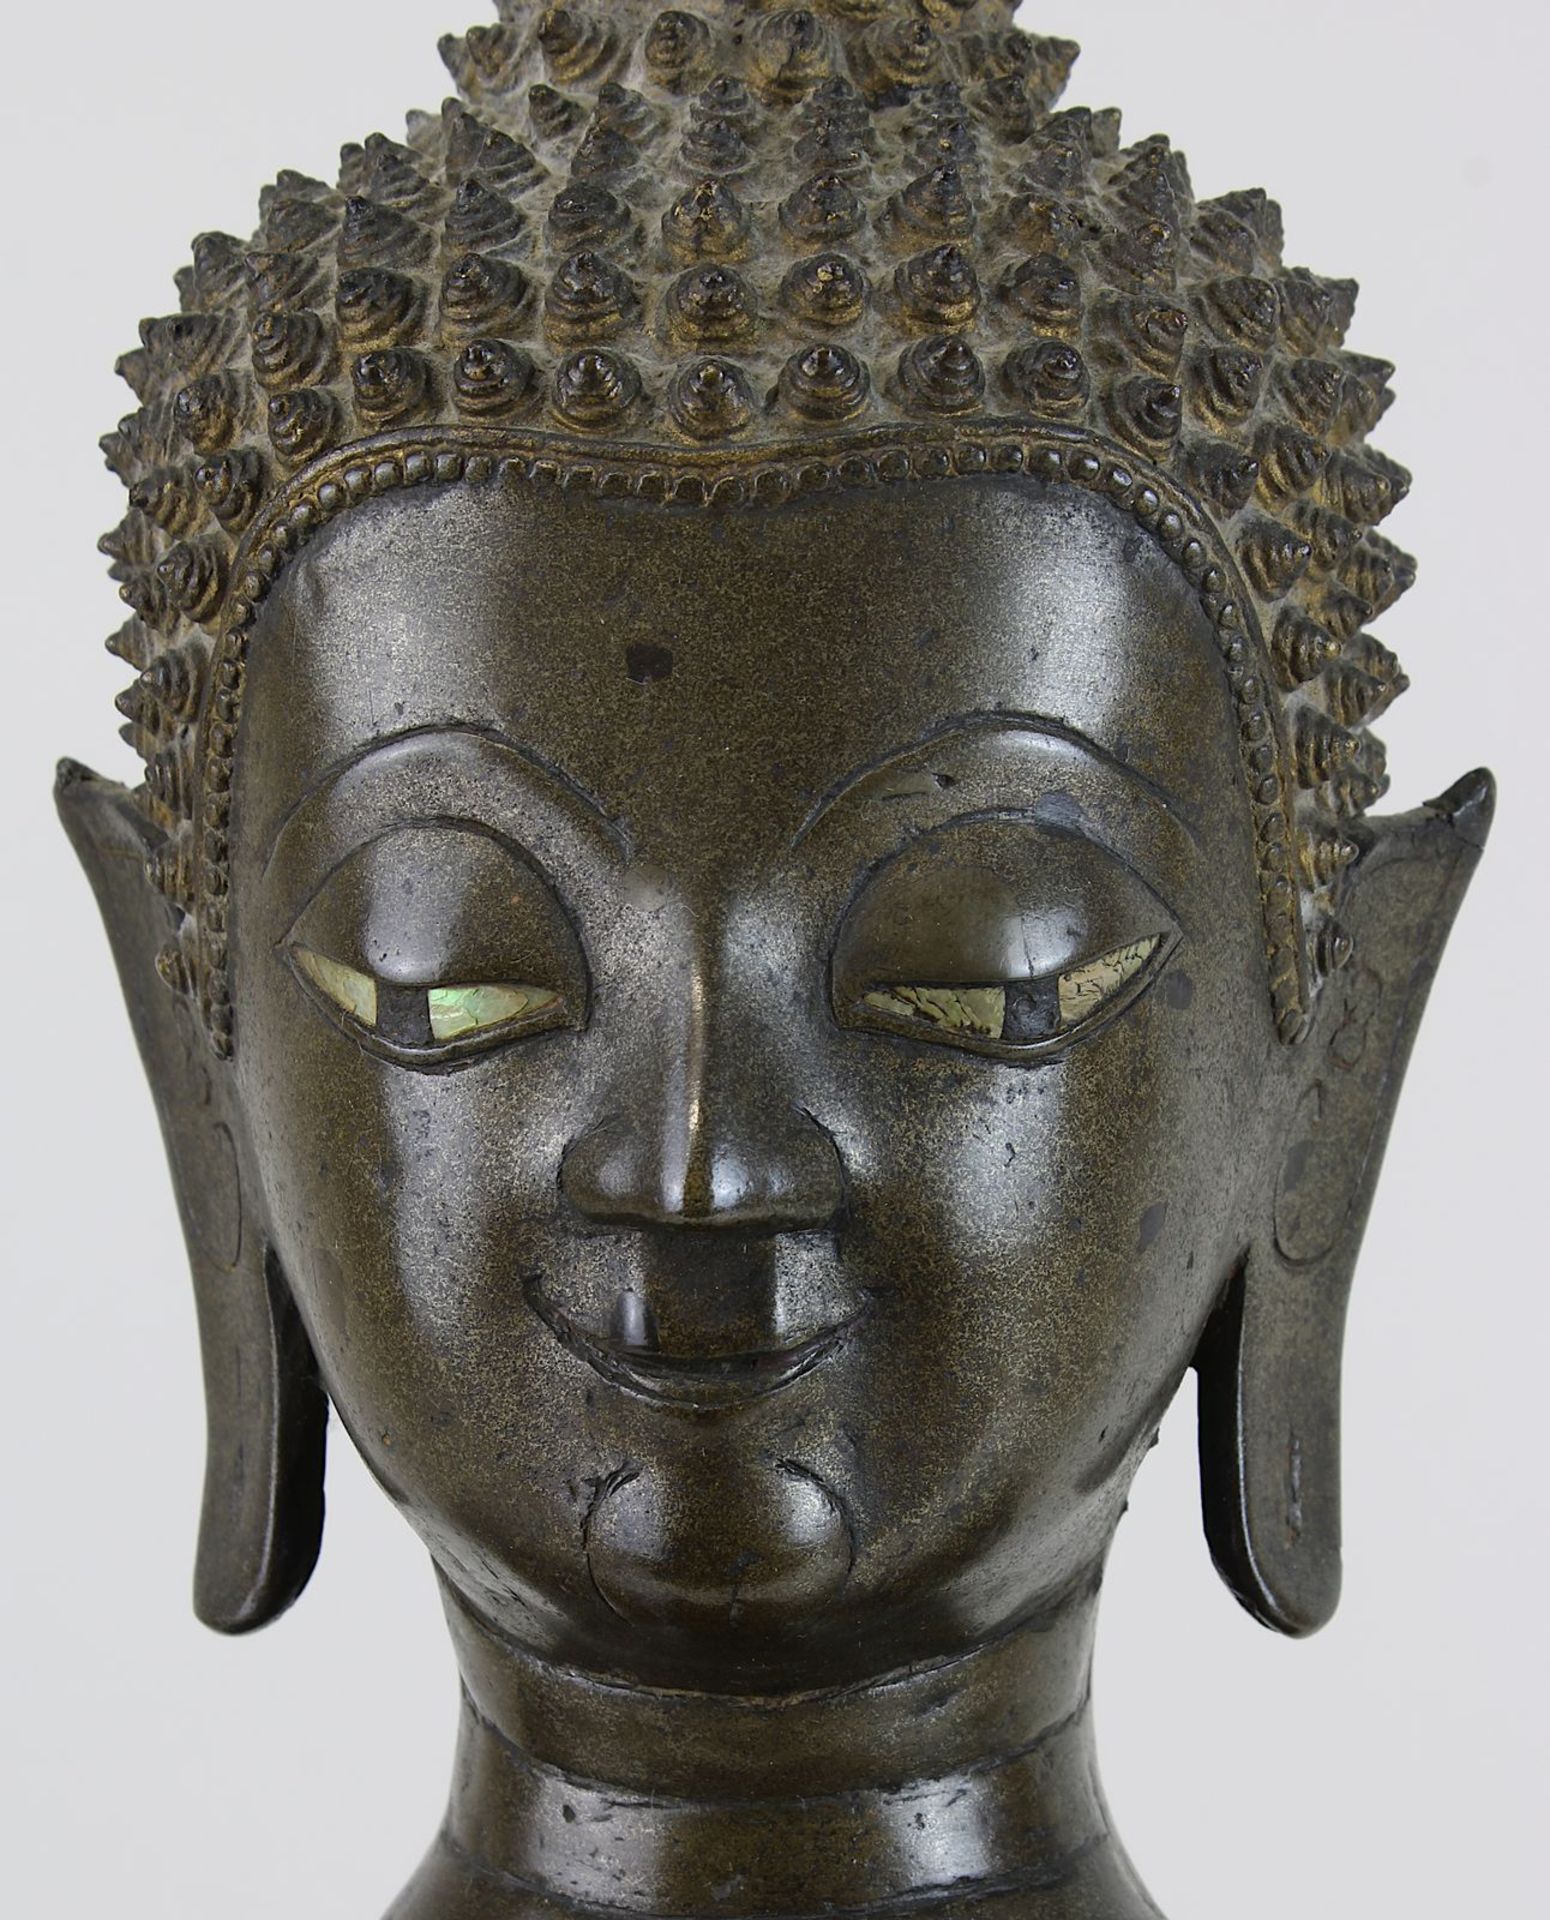 Großer Bronze-Buddha, Siam wohl um 1800, Buddha in Meditationshaltung auf glattem mehreckigem Sockel - Bild 6 aus 6